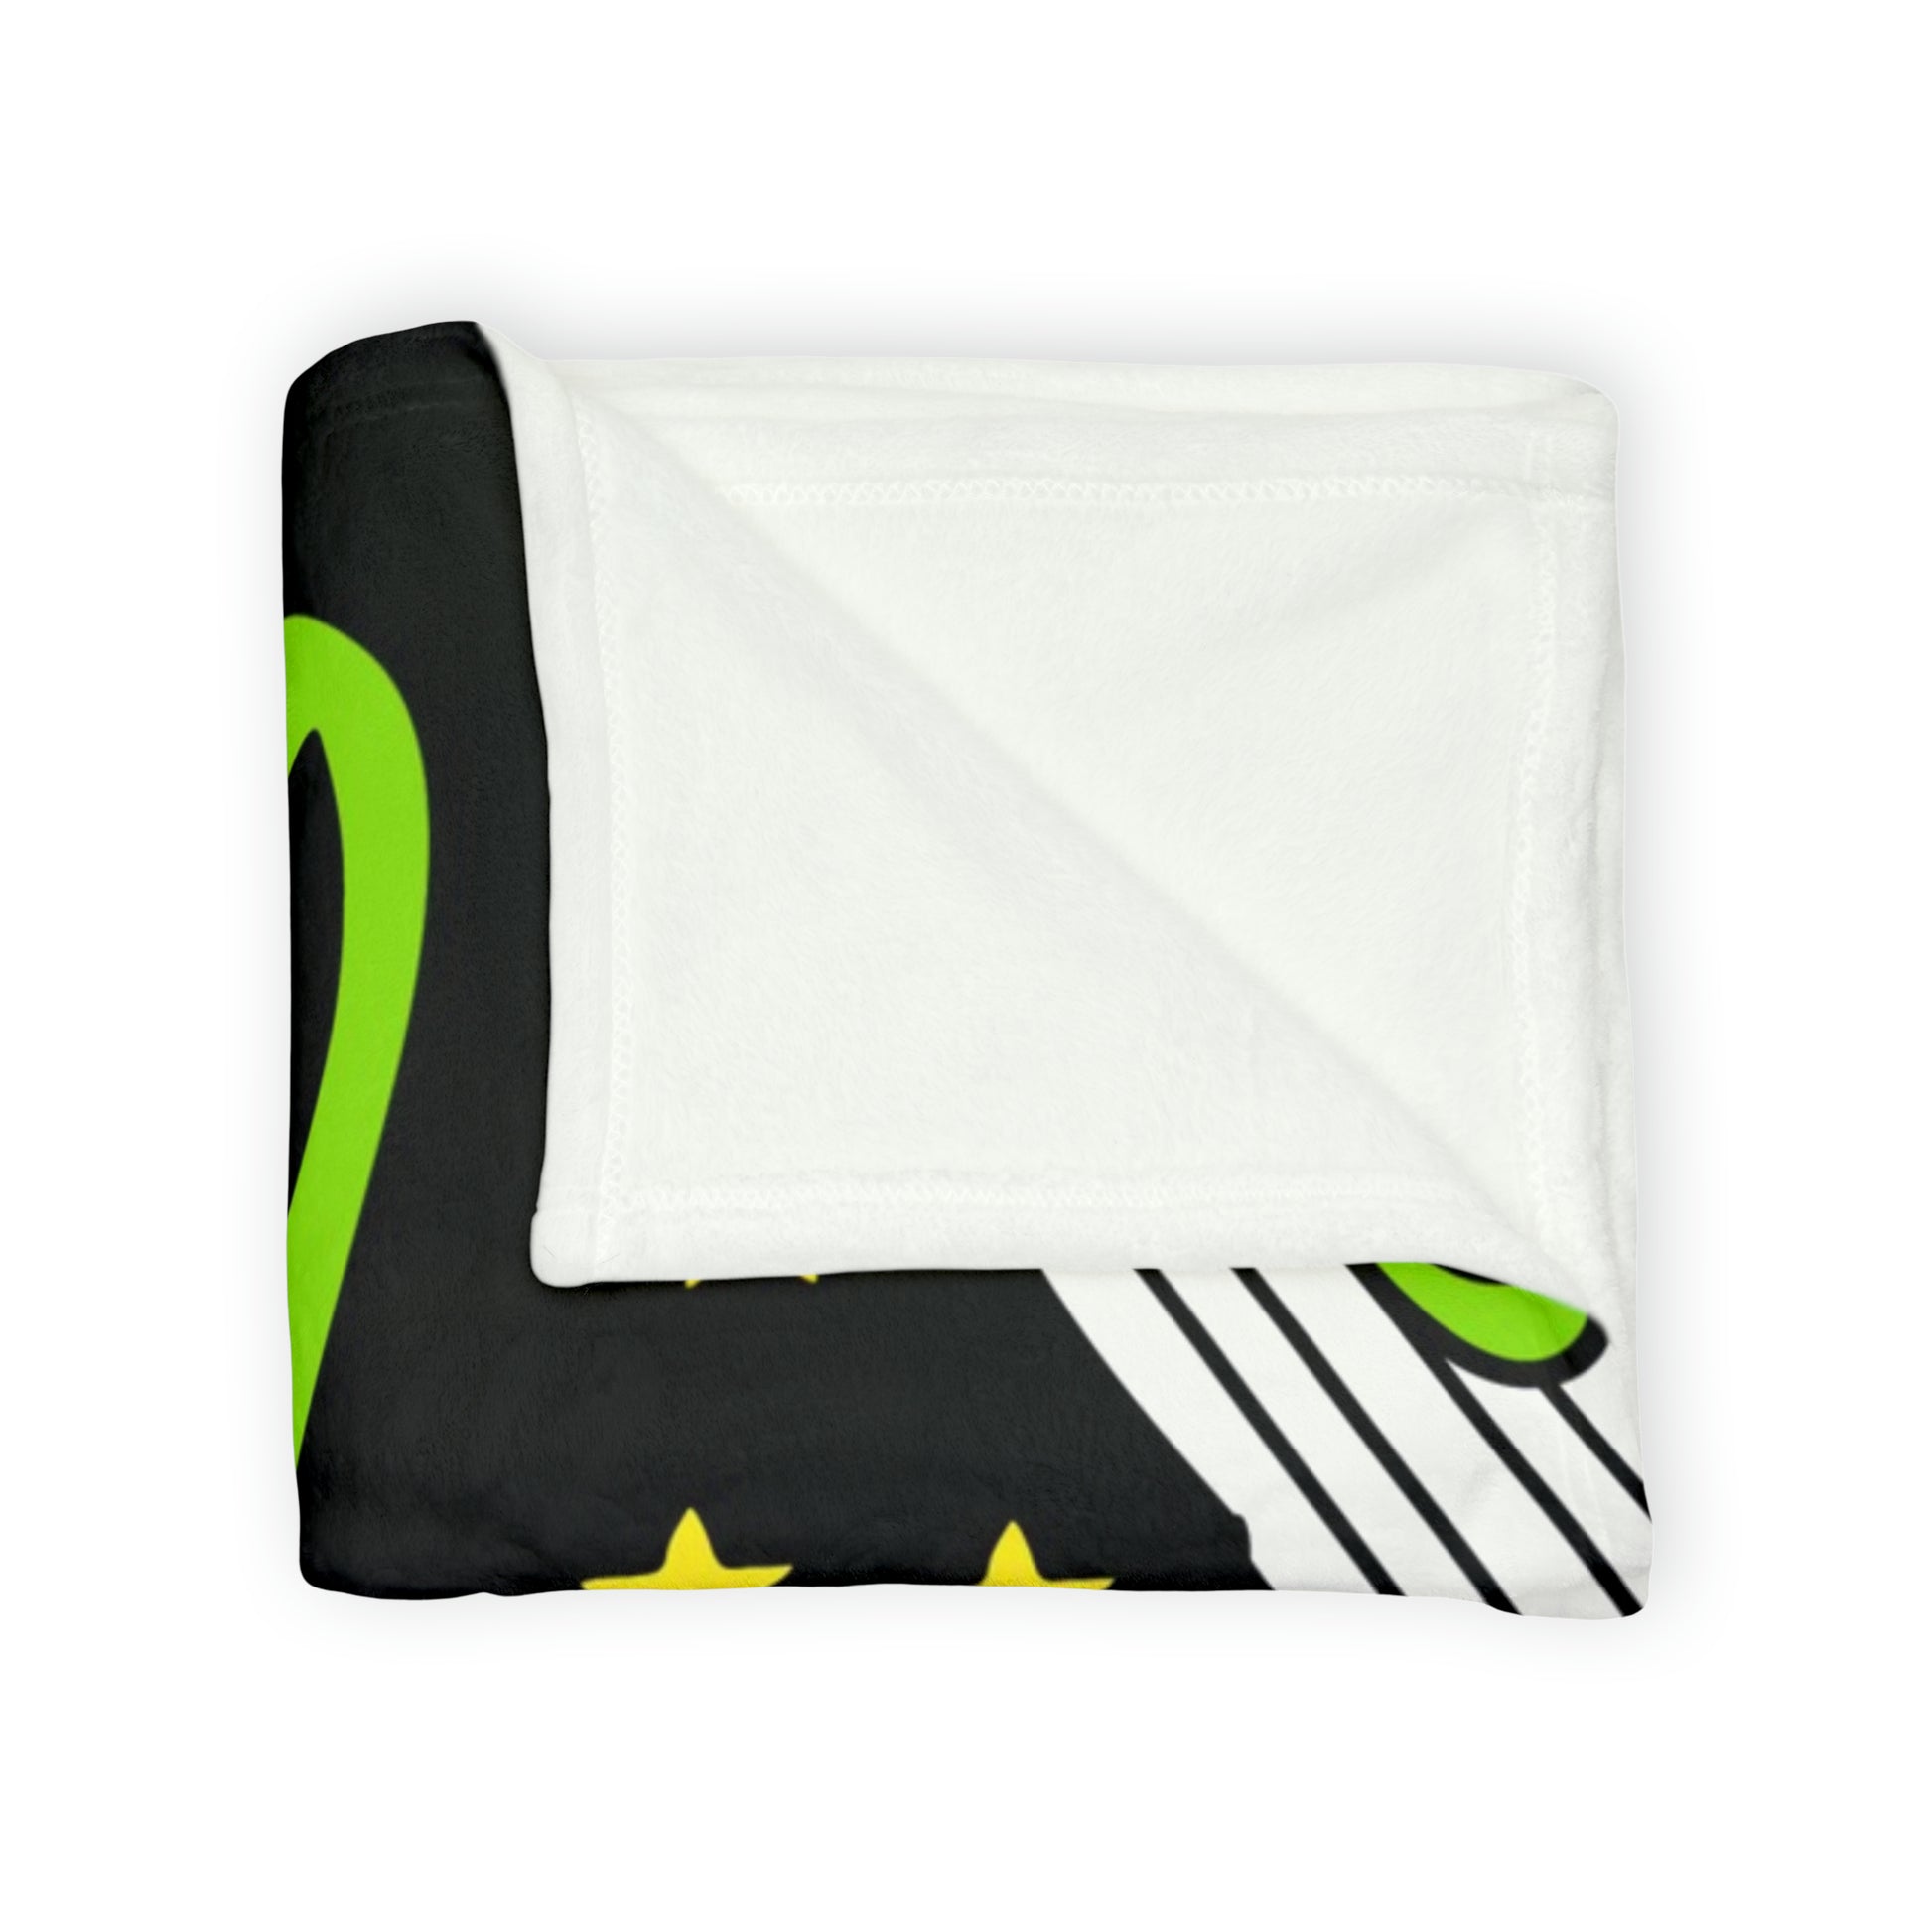 Alien OK - Soft Polyester Blanket Blanket Sci Fi